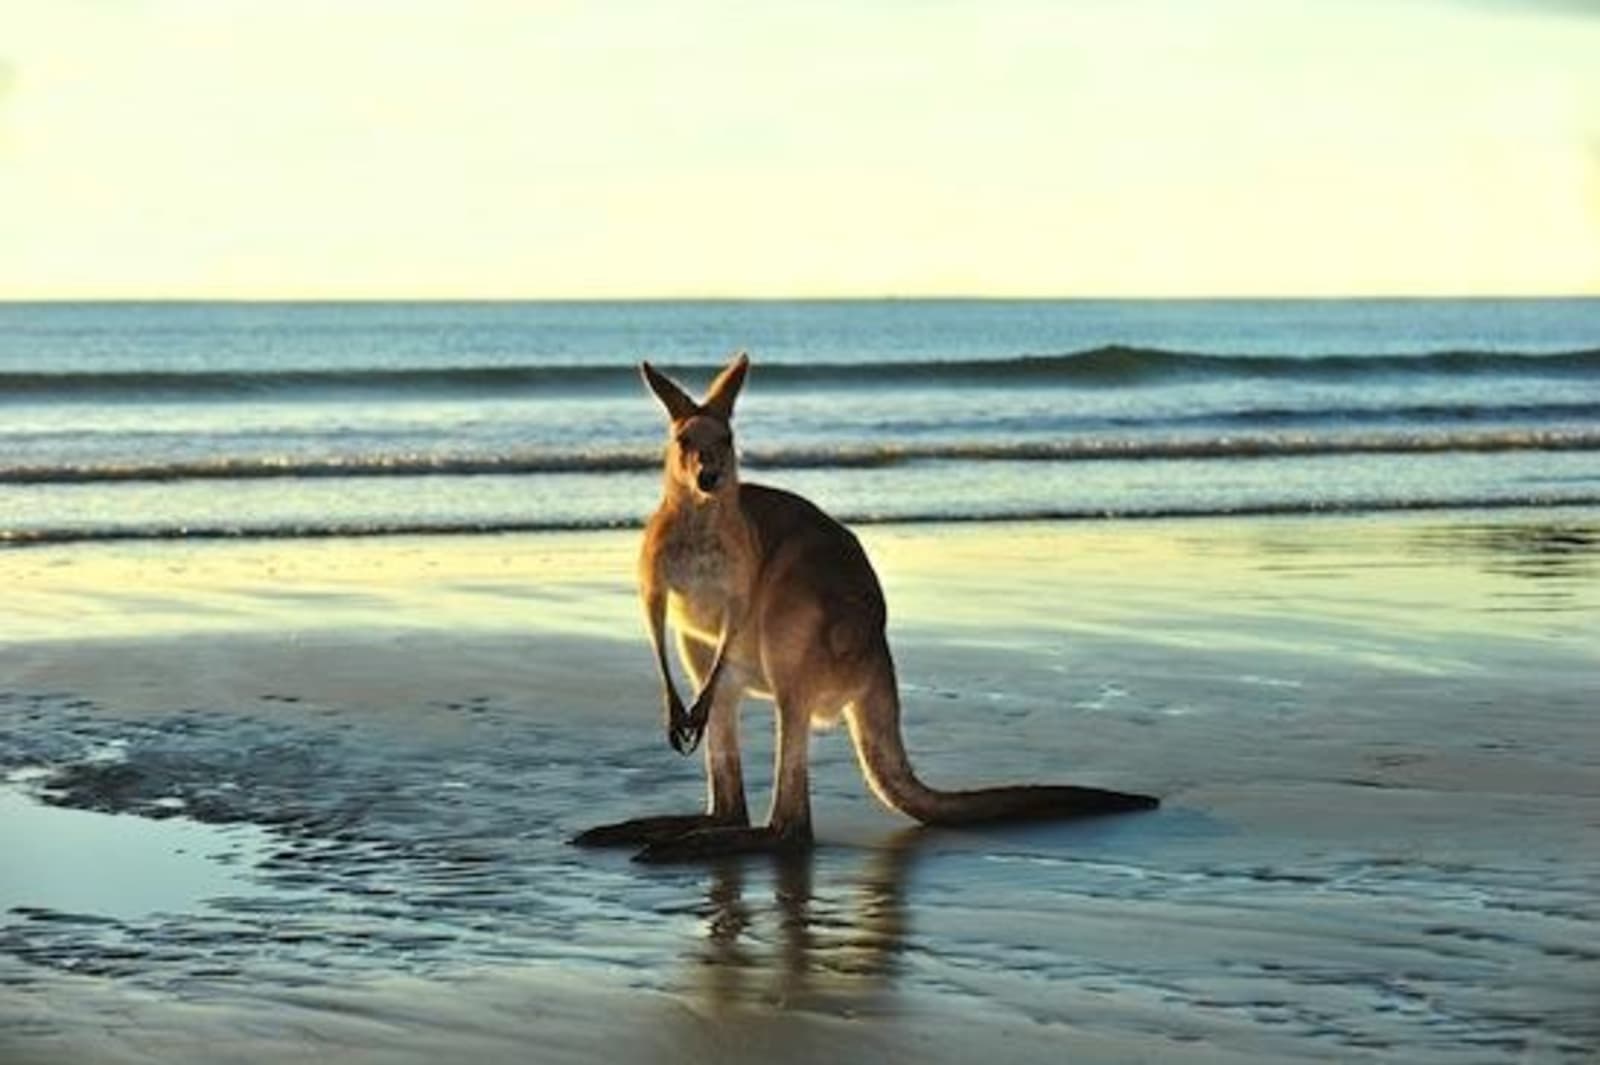 kangaroo-on-beach-in-australia_110369312.jpg